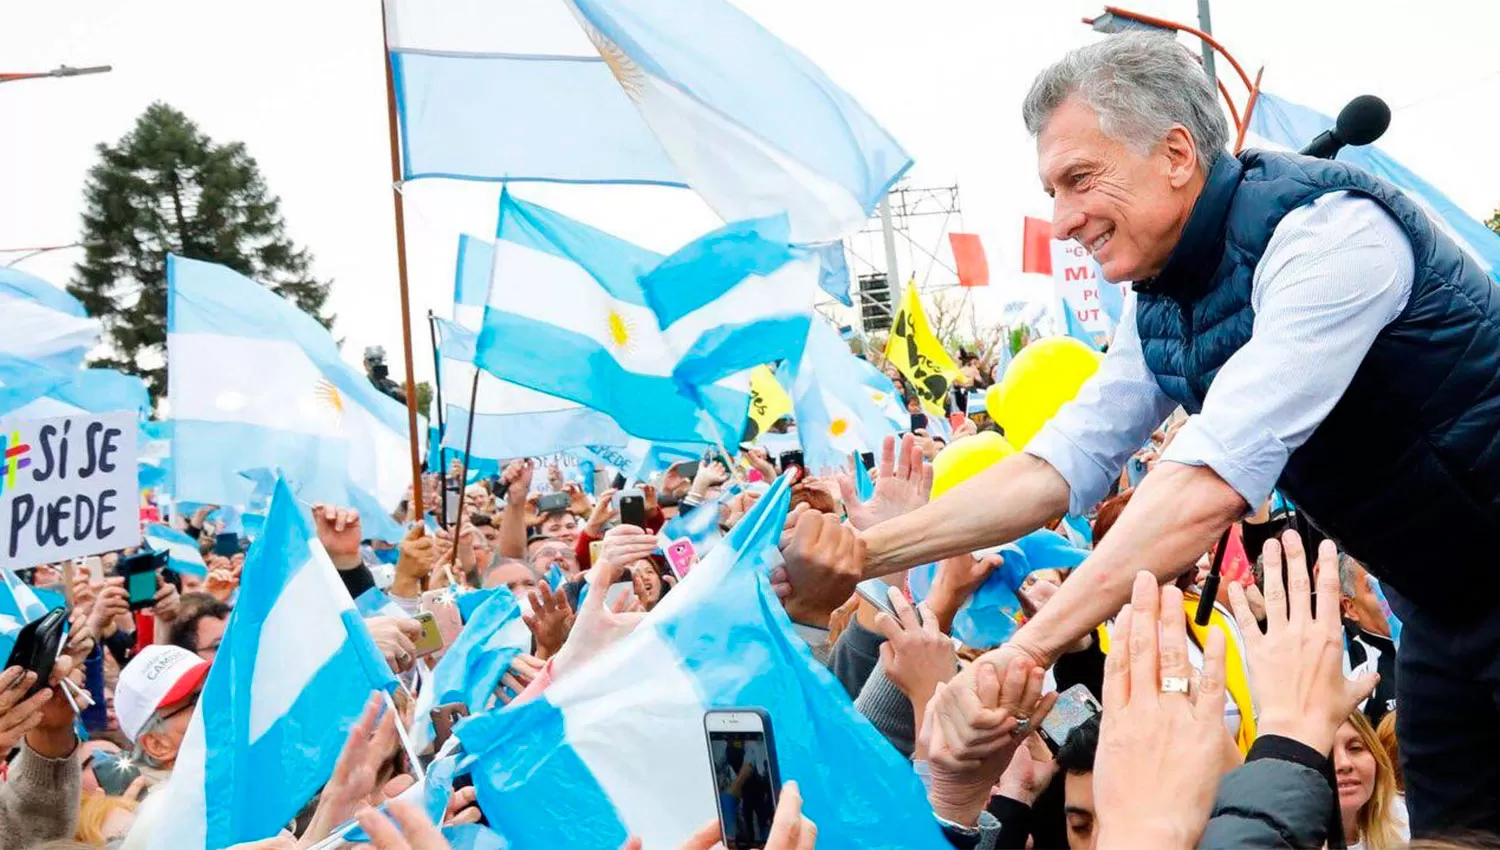 Equivocadamente creen que ganaron y comienzan a perseguir periodistas, lanzó Macri